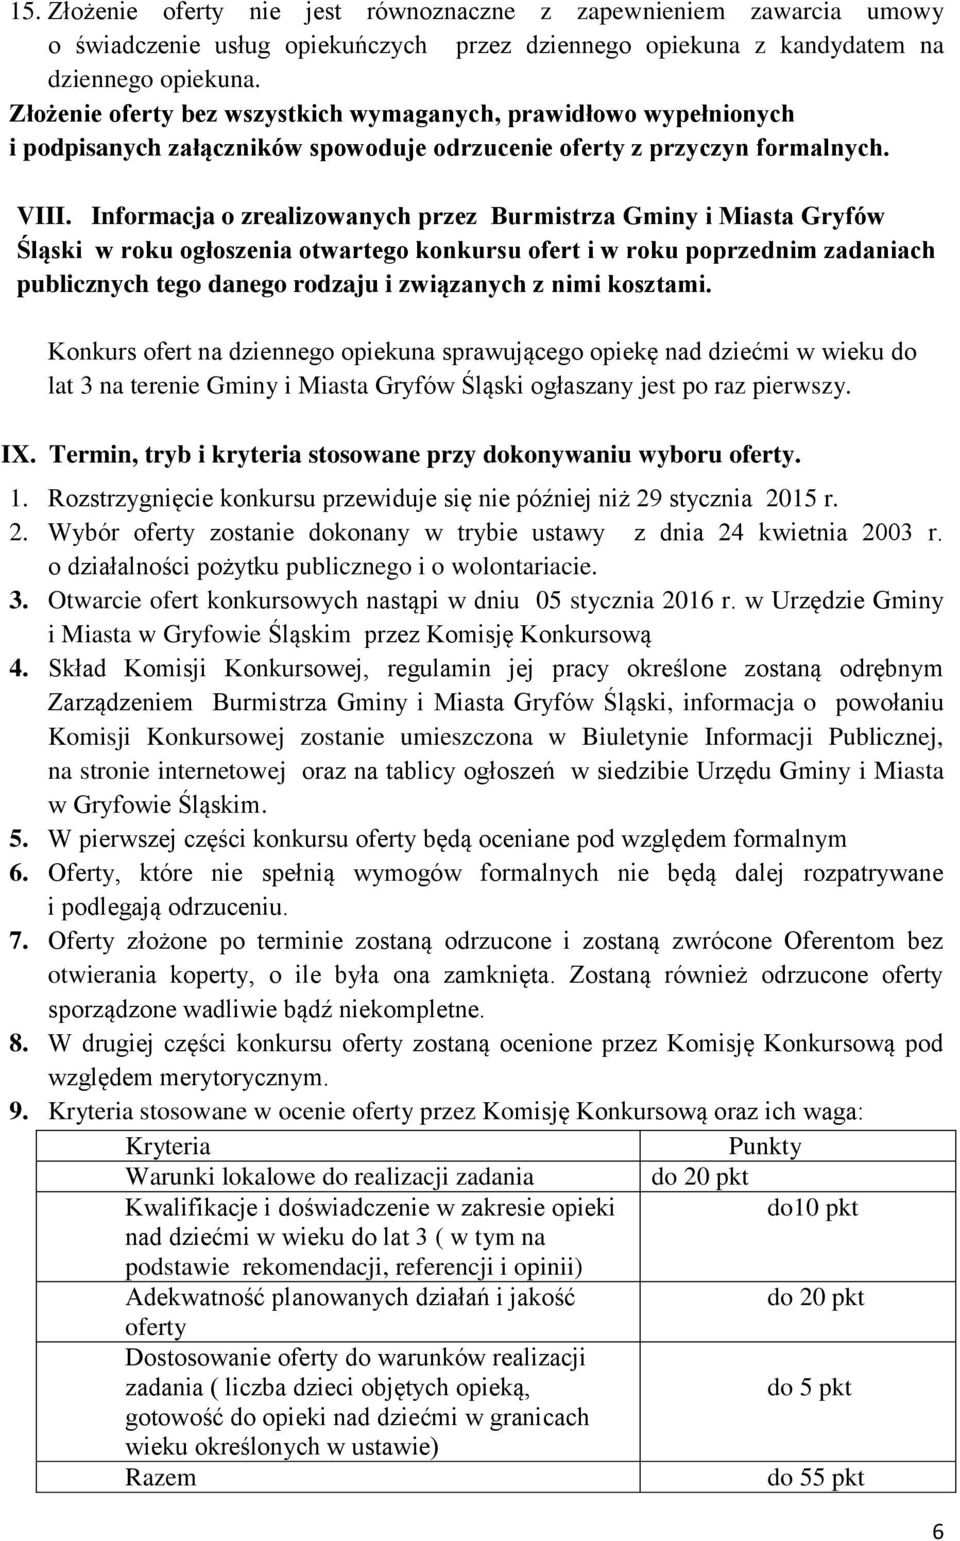 Informacja o zrealizowanych przez Burmistrza Gminy i Miasta Gryfów Śląski w roku ogłoszenia otwartego konkursu ofert i w roku poprzednim zadaniach publicznych tego danego rodzaju i związanych z nimi